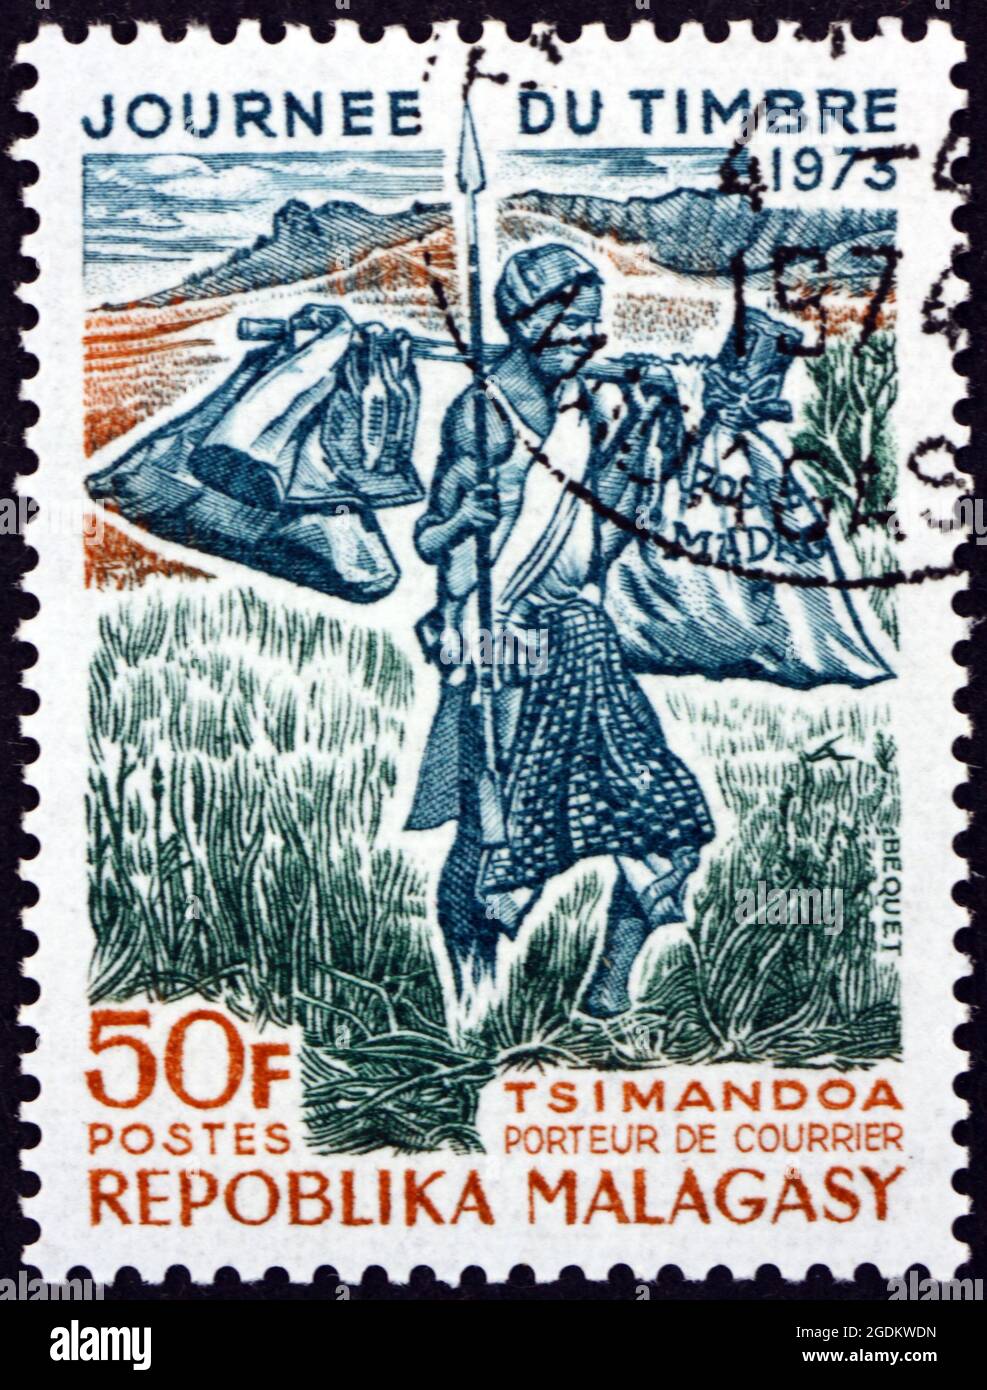 MALGACHE - VERS 1973: Un timbre imprimé à Malgache, Madagascar montre Tsimandoa Mail Carrier, vers 1973 Banque D'Images